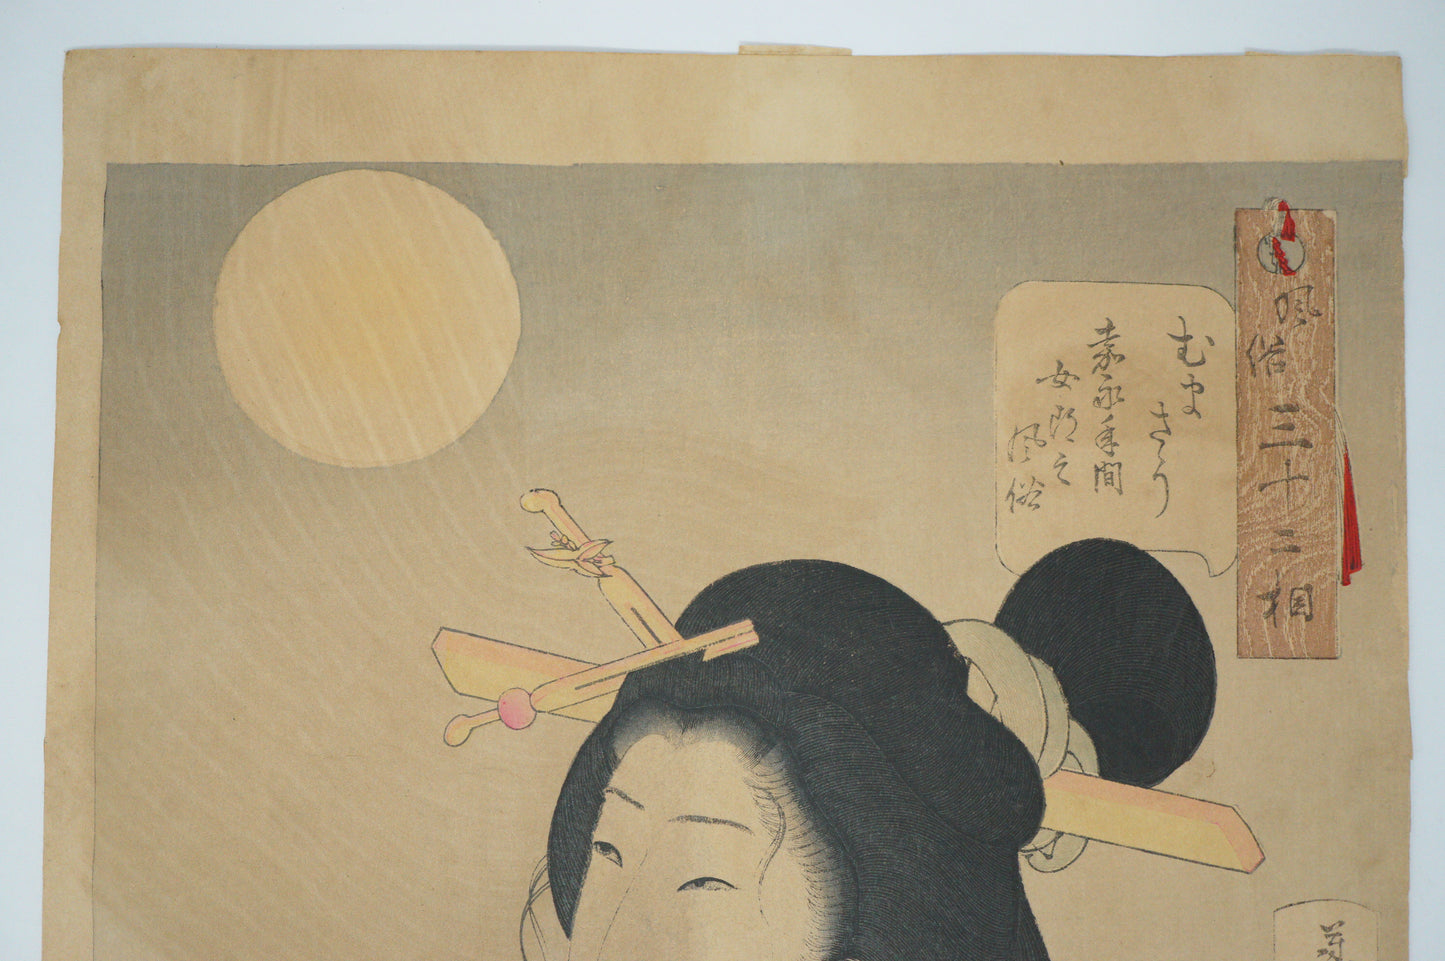 Rare Yoshitoshi Woodblock Print Original "Looking Delicious" from Japan 0310E10